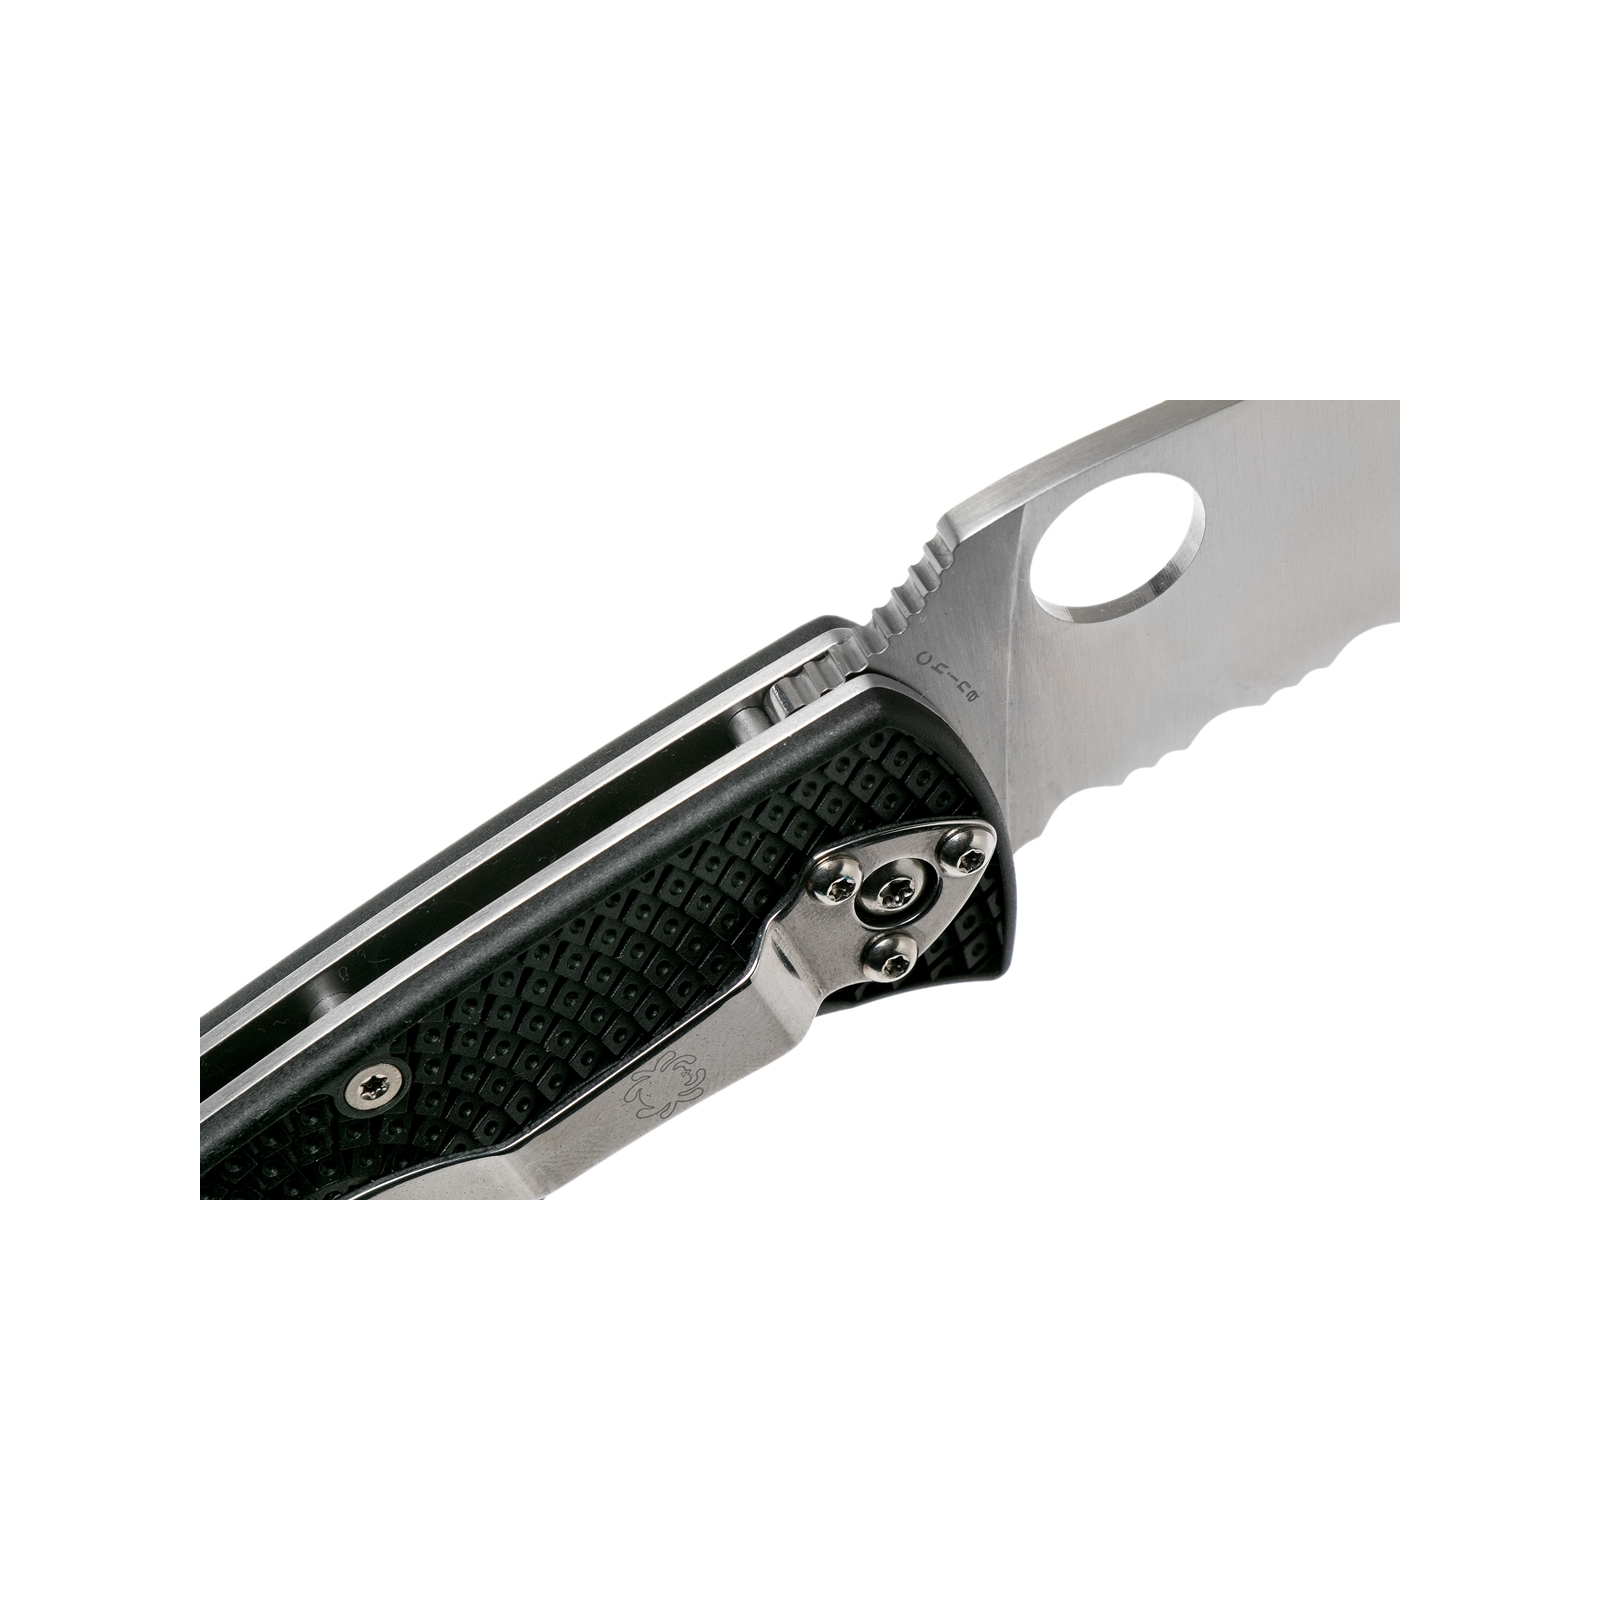 Нож Spyderco Tenacious Black Blade FRN серрейтор (C122SBBK) изображение 4